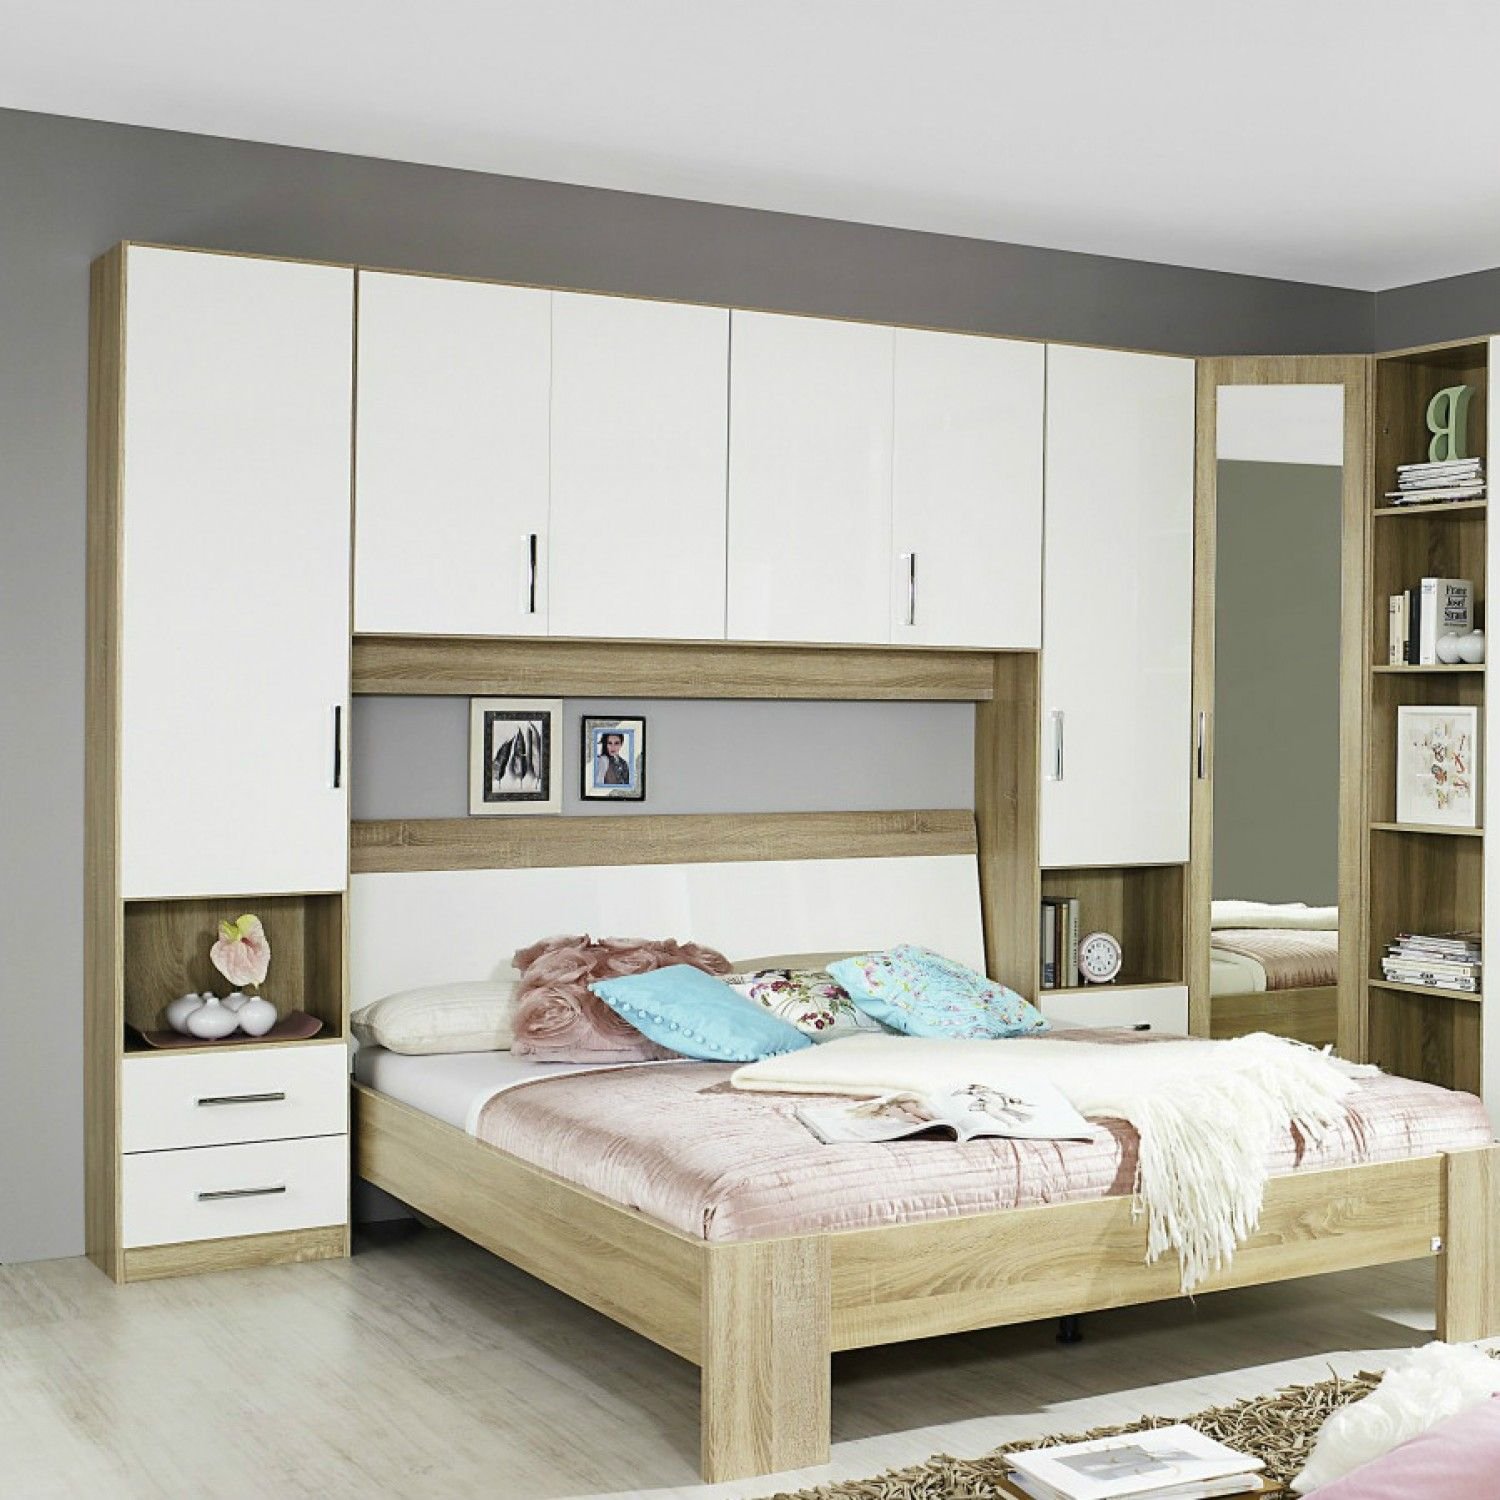 мебель для маленькой спальни фото дизайн цена